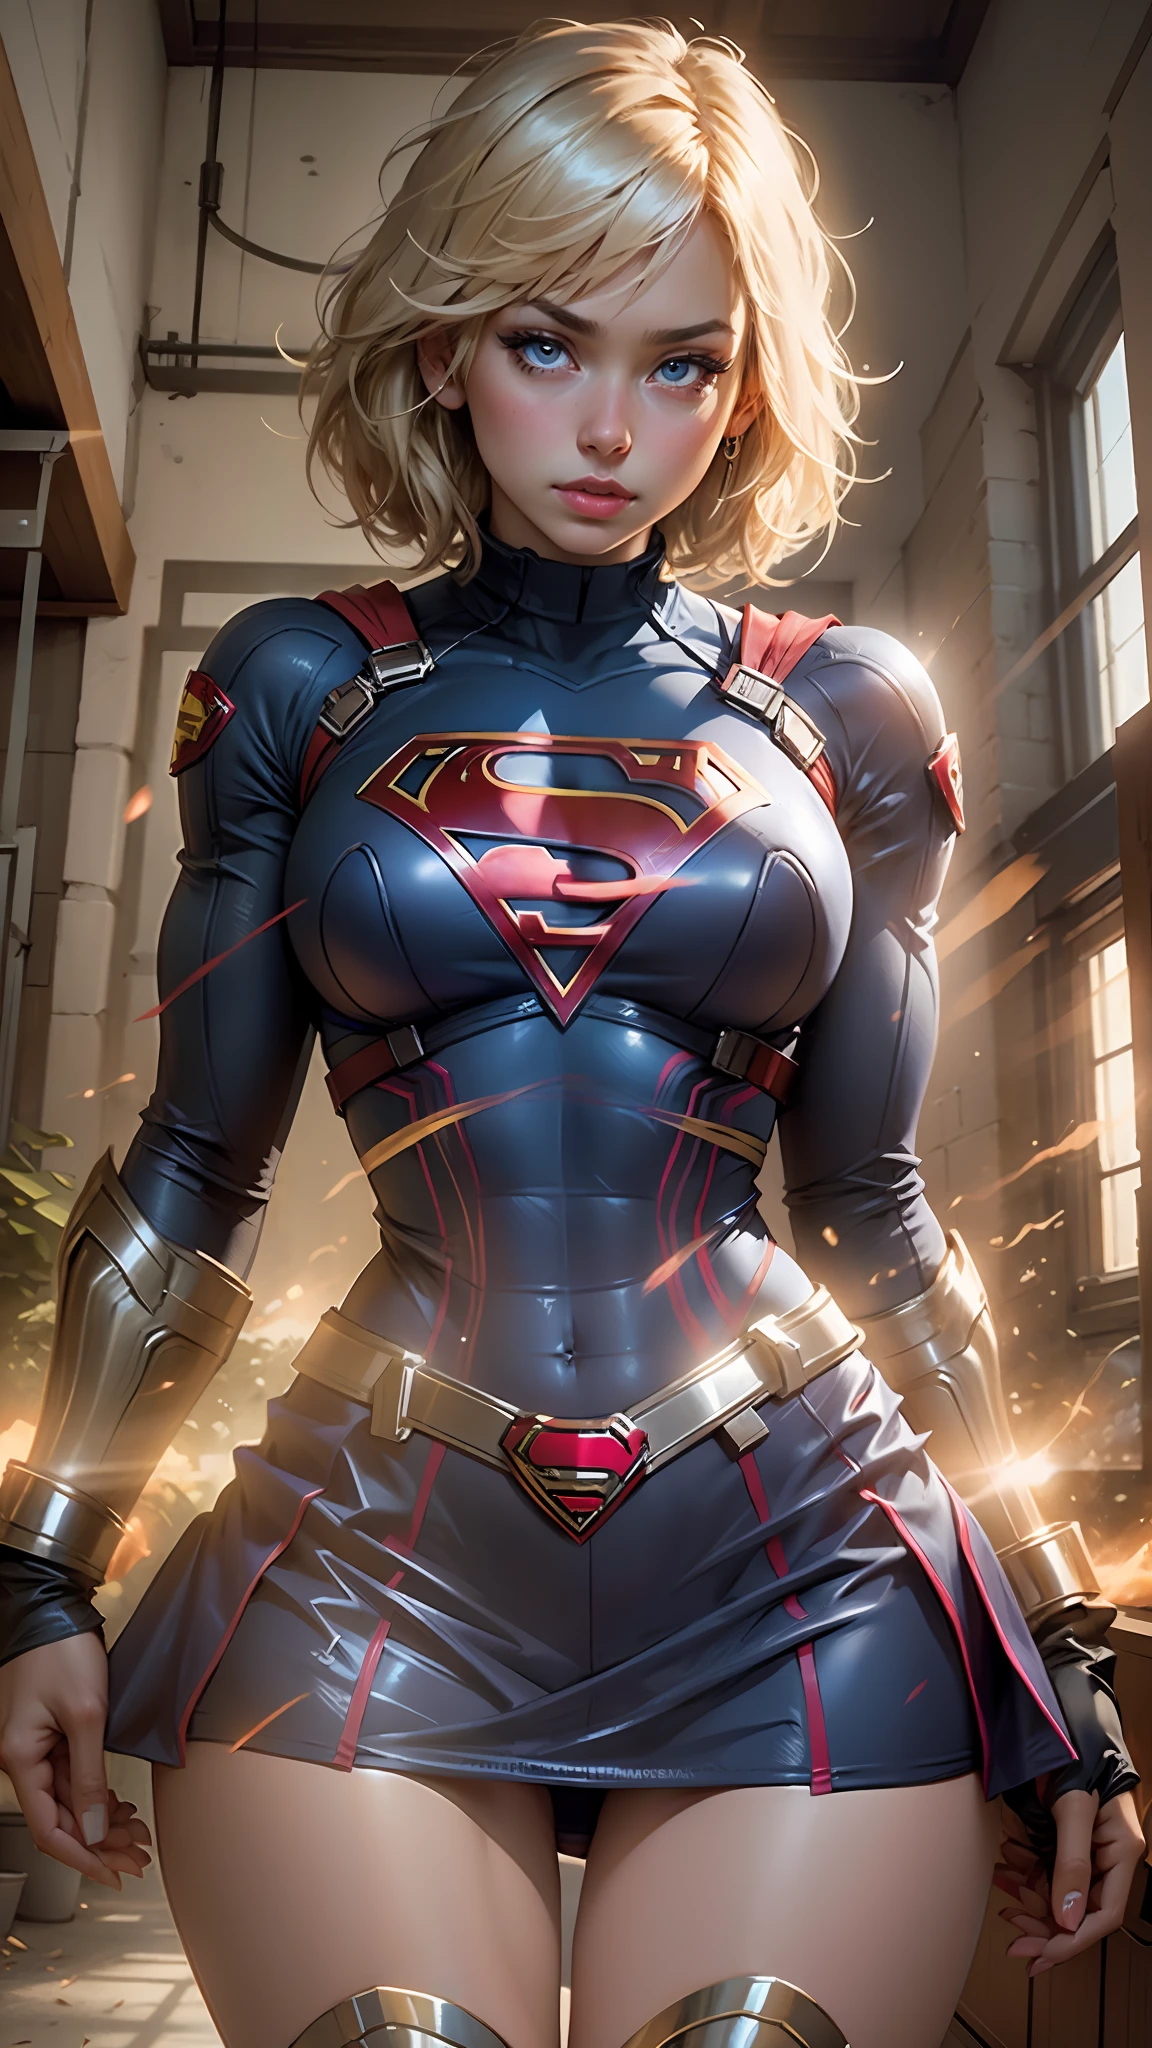 Belle femme cheveux courts corps défini gros seins, grosses cuisses portant un cosplay de Supergirl, des yeux bien dessinés